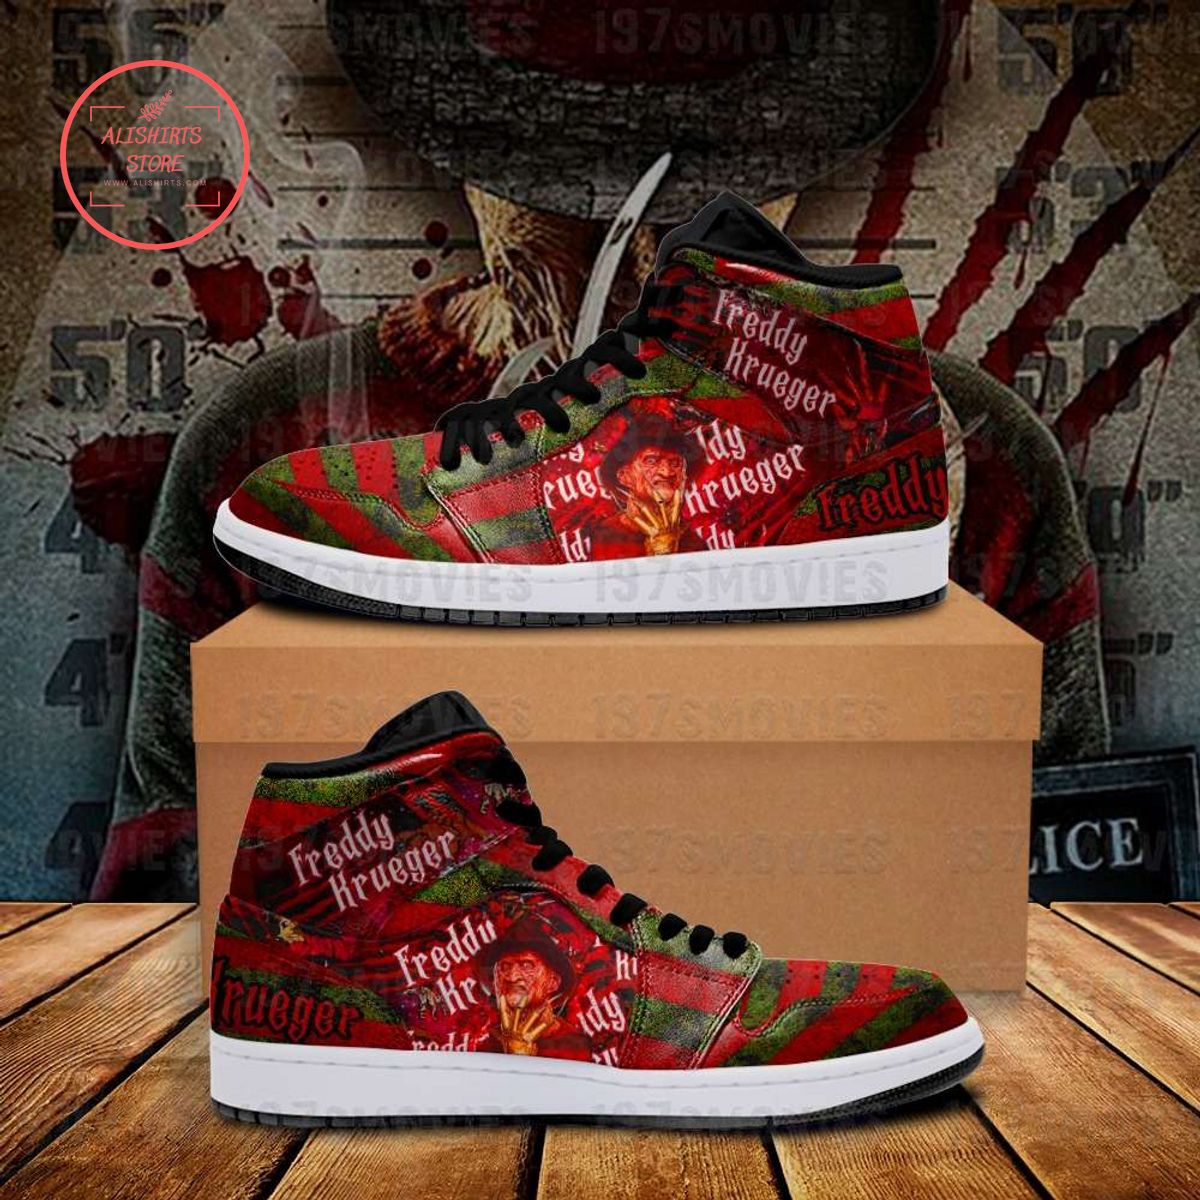 Freddy Krueger A Nightmare On Elm Street Air Jordan 1 Sneakers